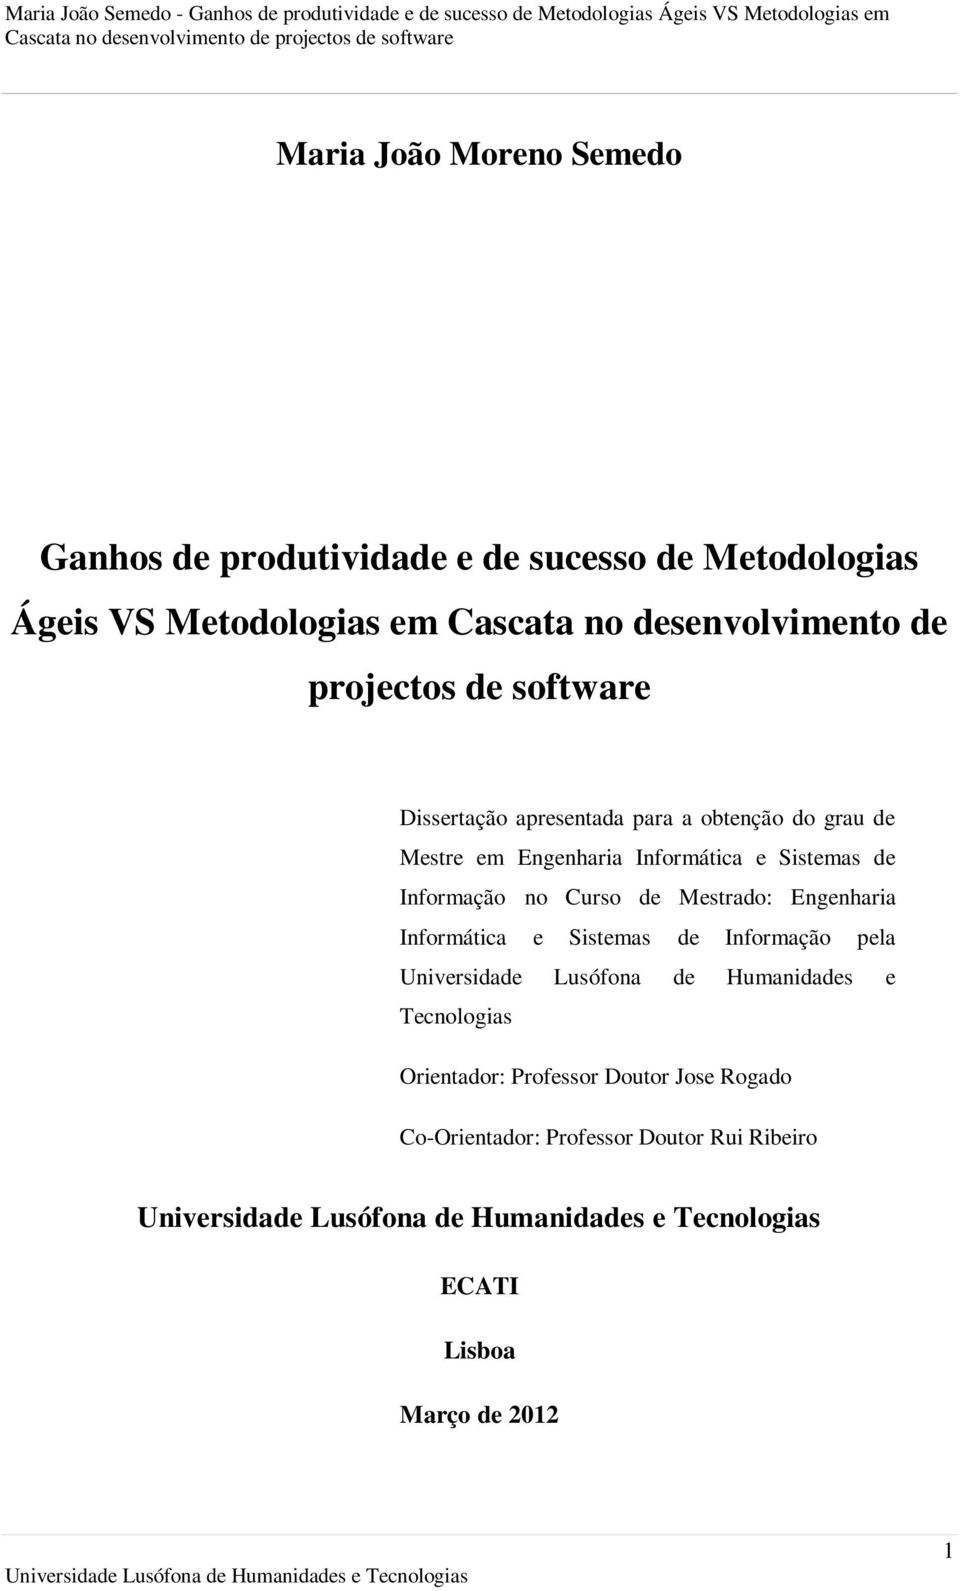 Curso de Mestrado: Engenharia Informática e Sistemas de Informação pela Universidade Lusófona de Humanidades e Tecnologias